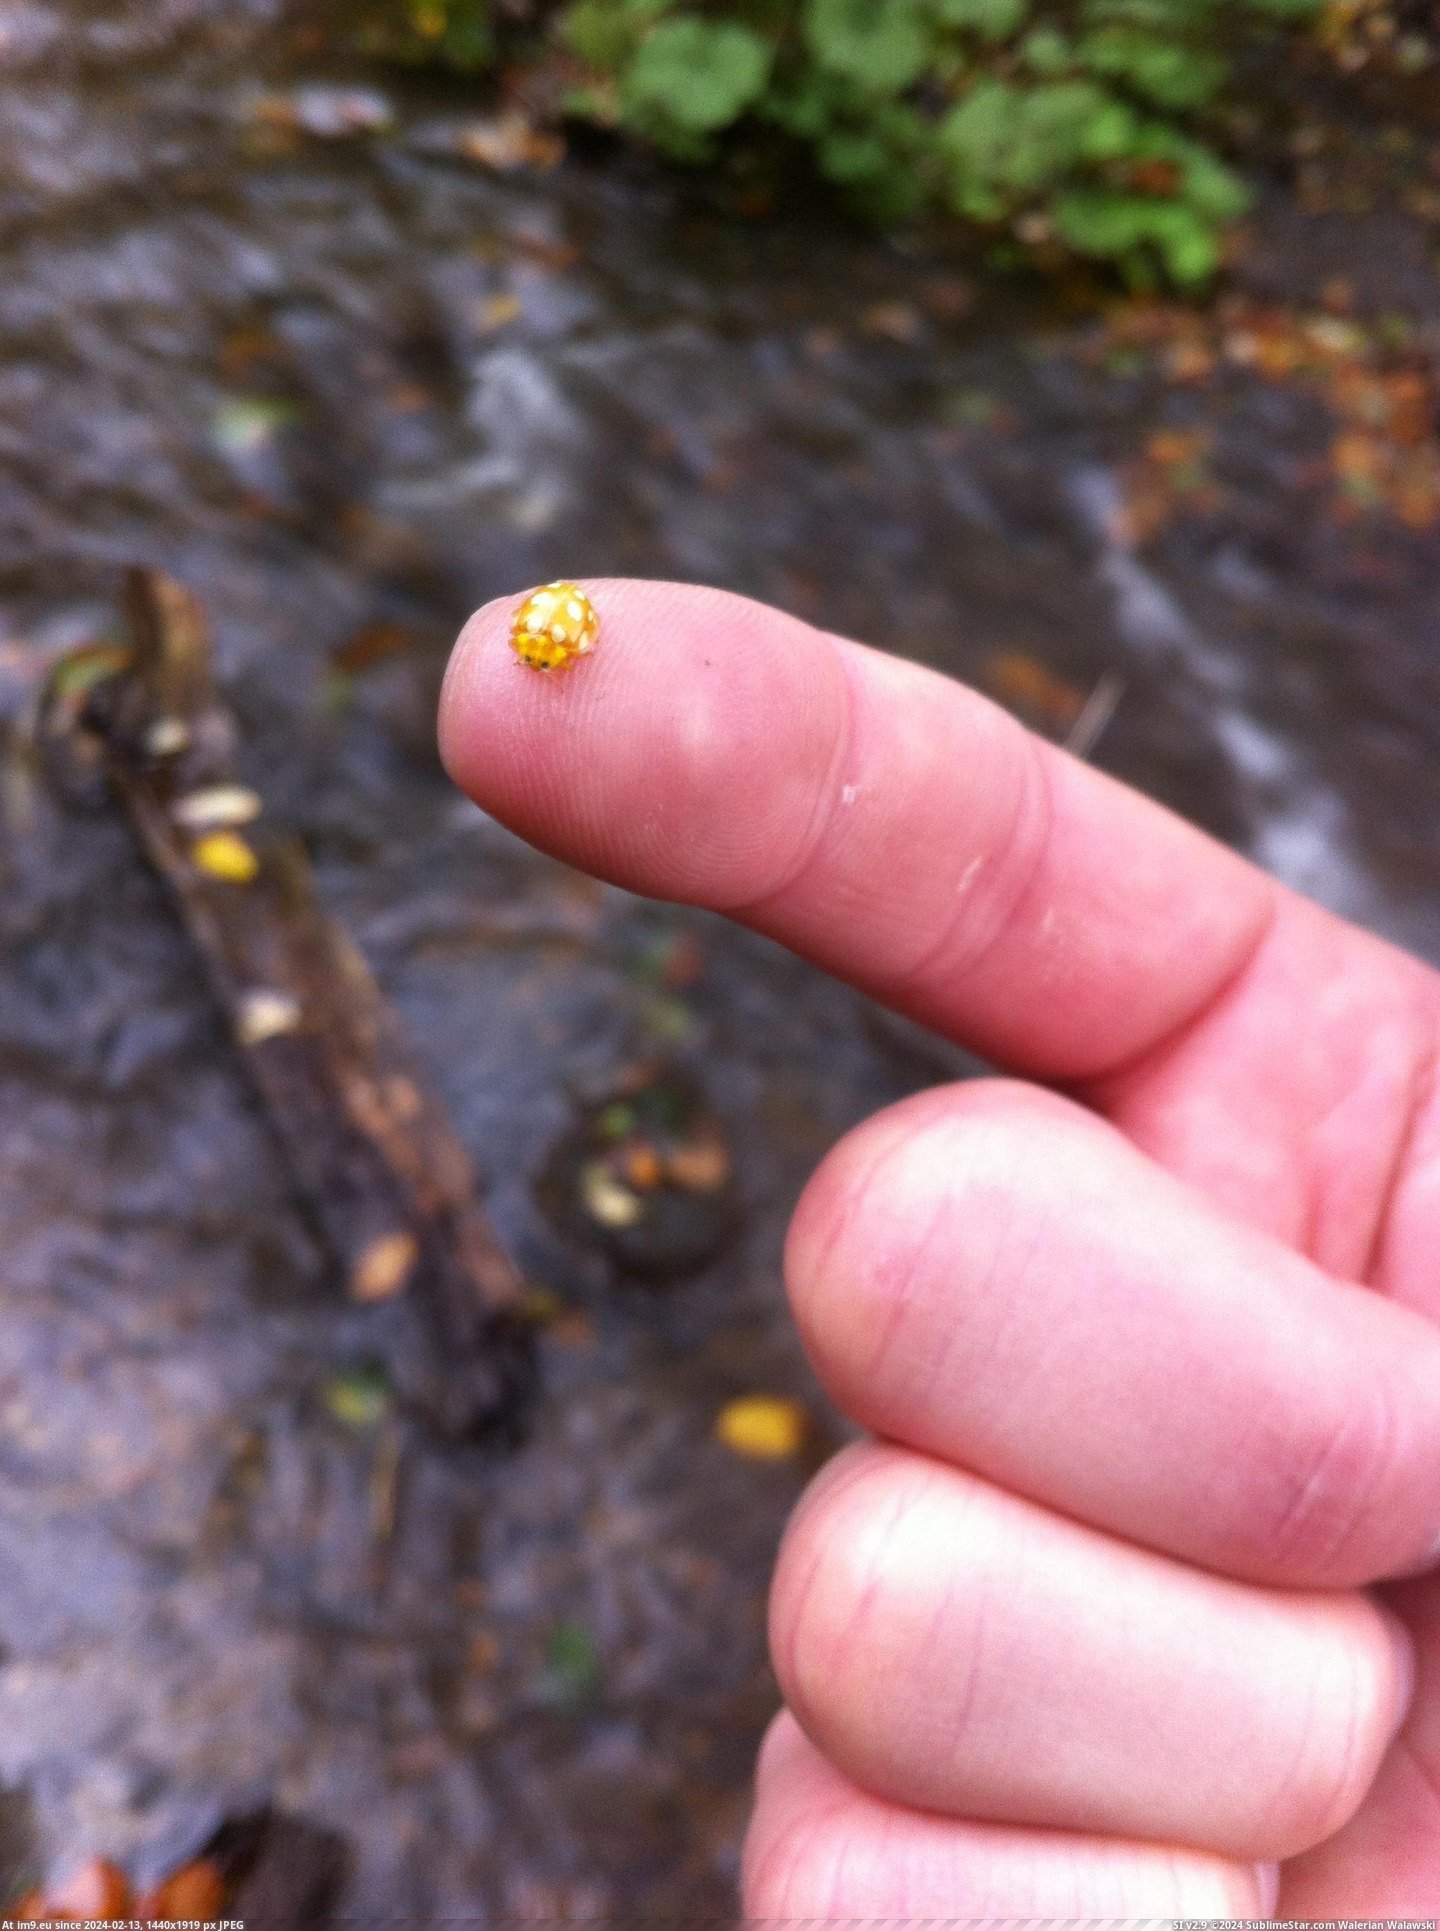 [Mildlyinteresting] This golden ladybug. (in My r/MILDLYINTERESTING favs)